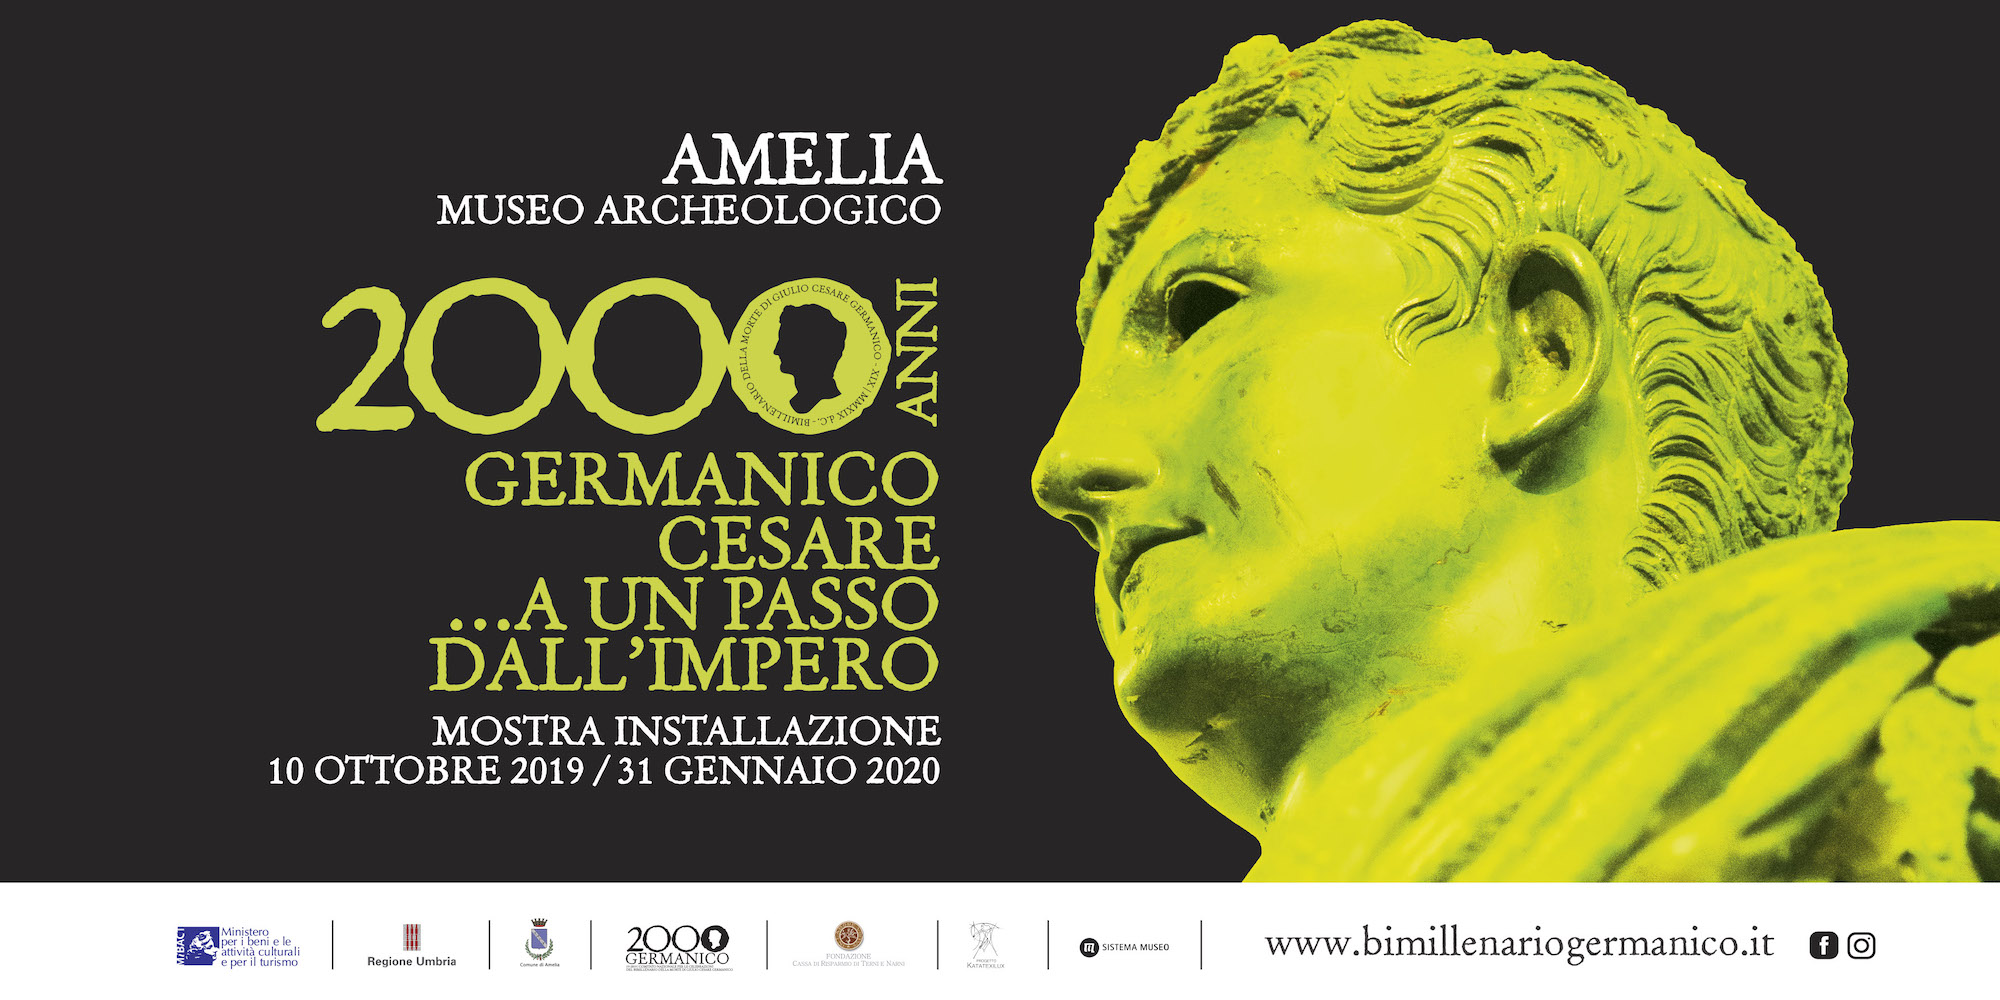 La Mostra Installazione "Germanico Cesare... A un passo dall'impero. Amelia 10 Ottobre - 31 Gennaio 2020